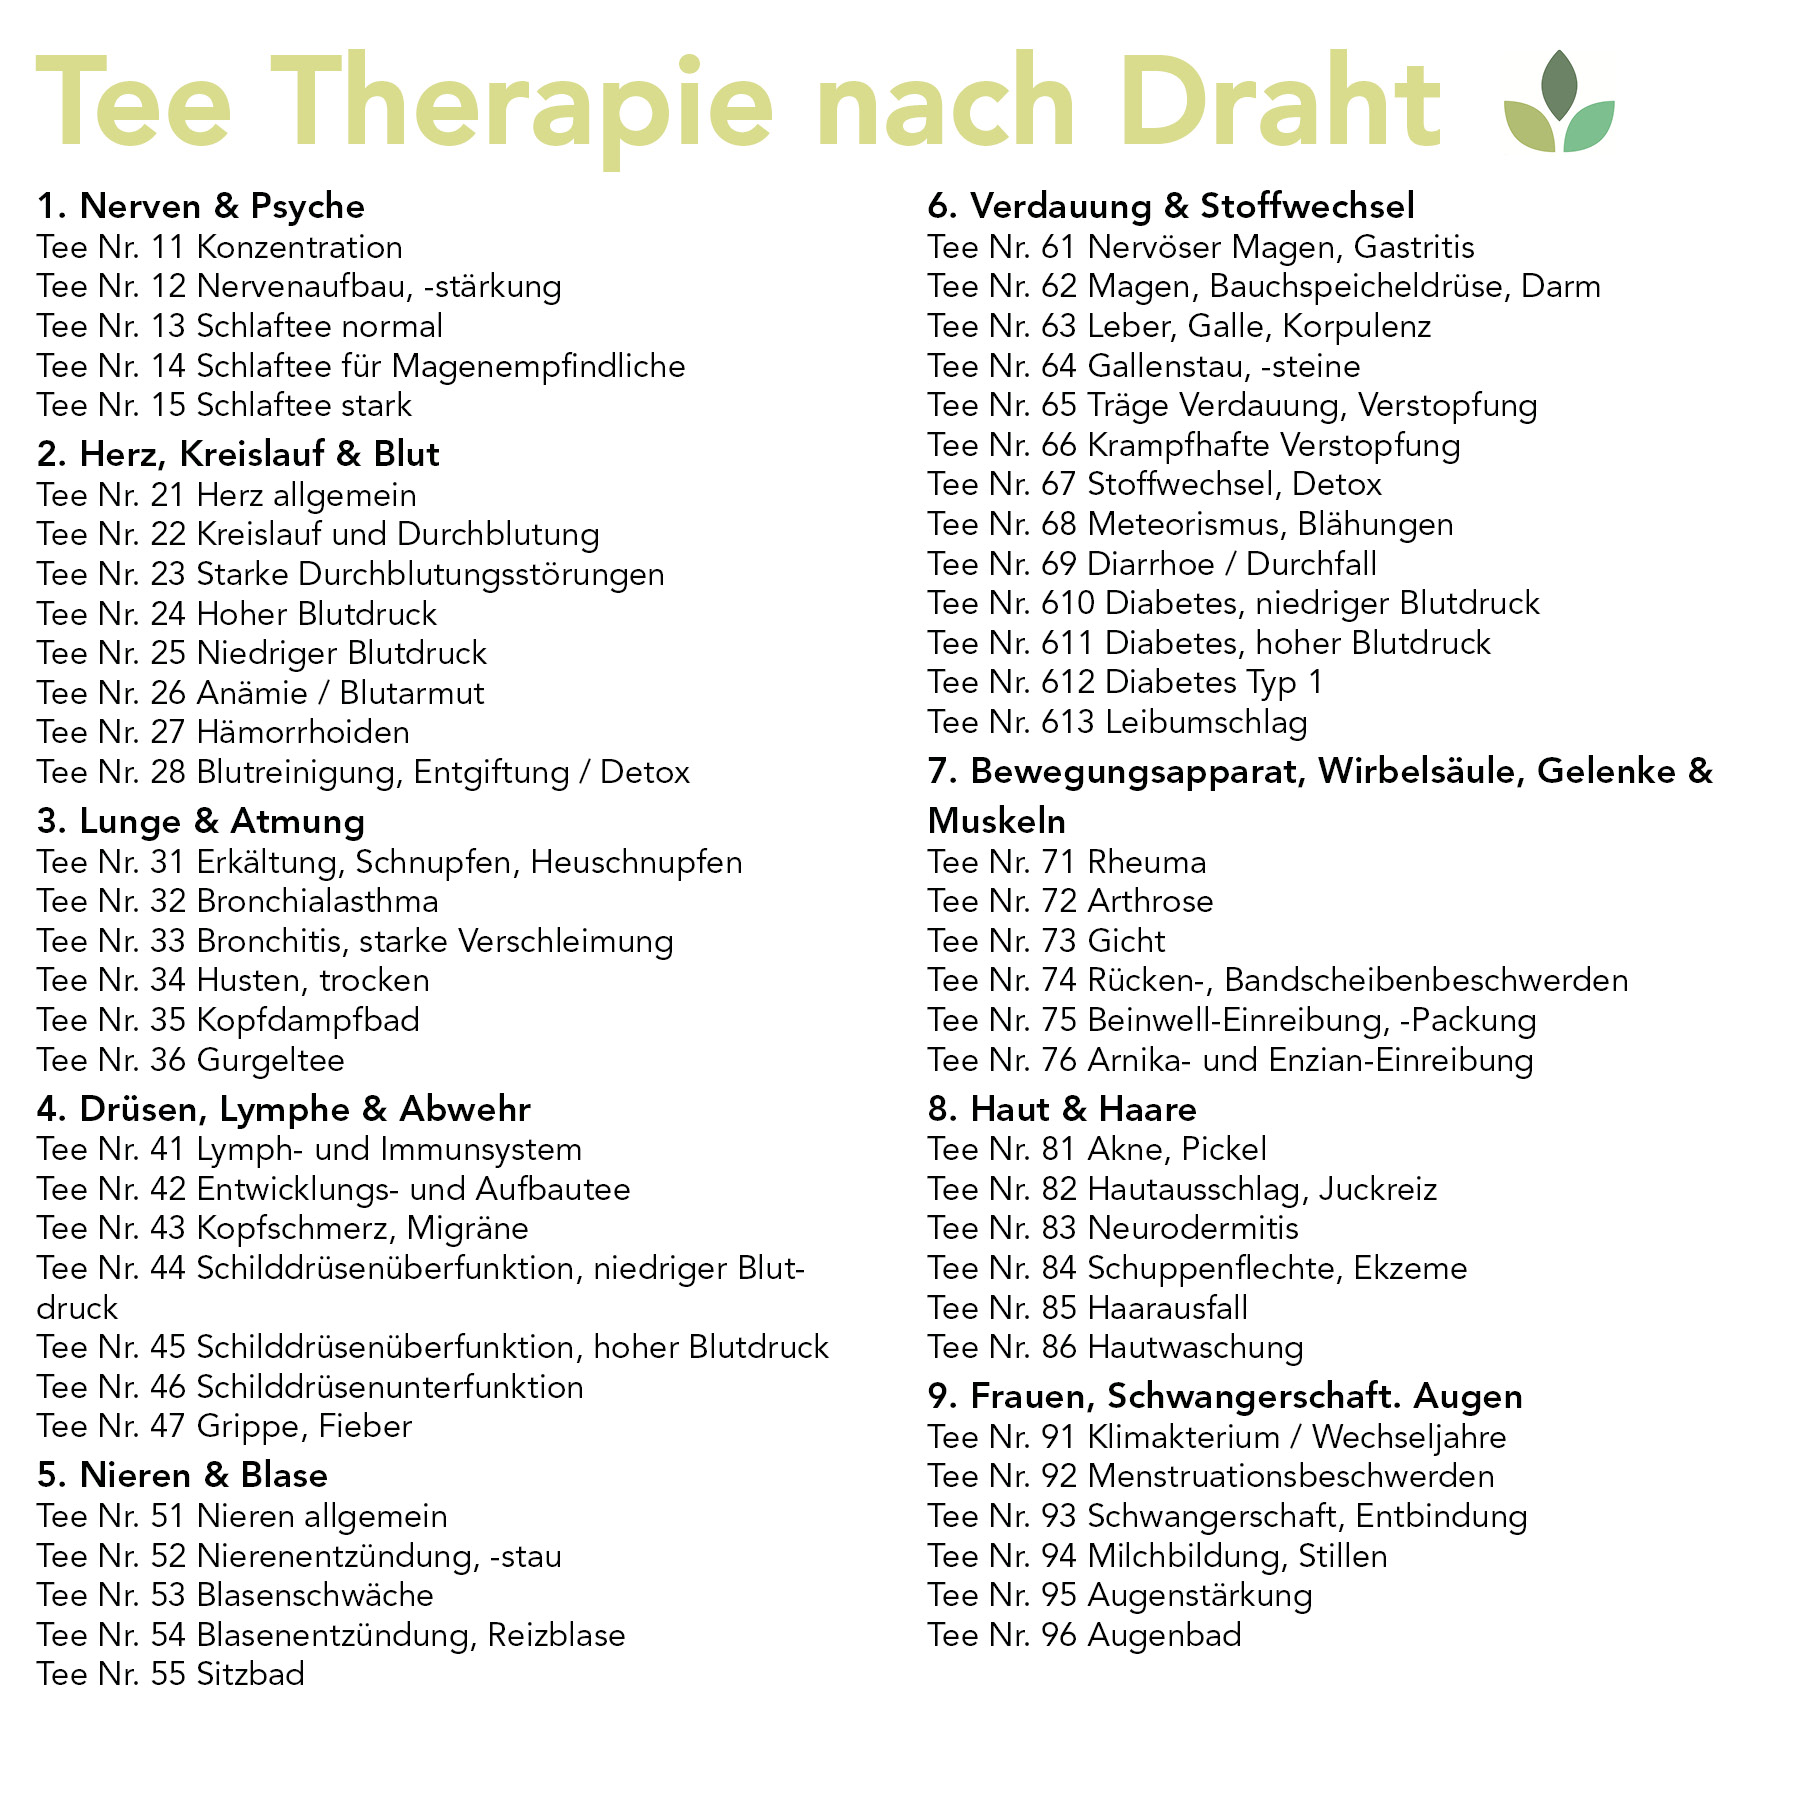 Tee-Therapie mit System | E-Book | kein gedrucktes Buch | Download im Kundenkonto